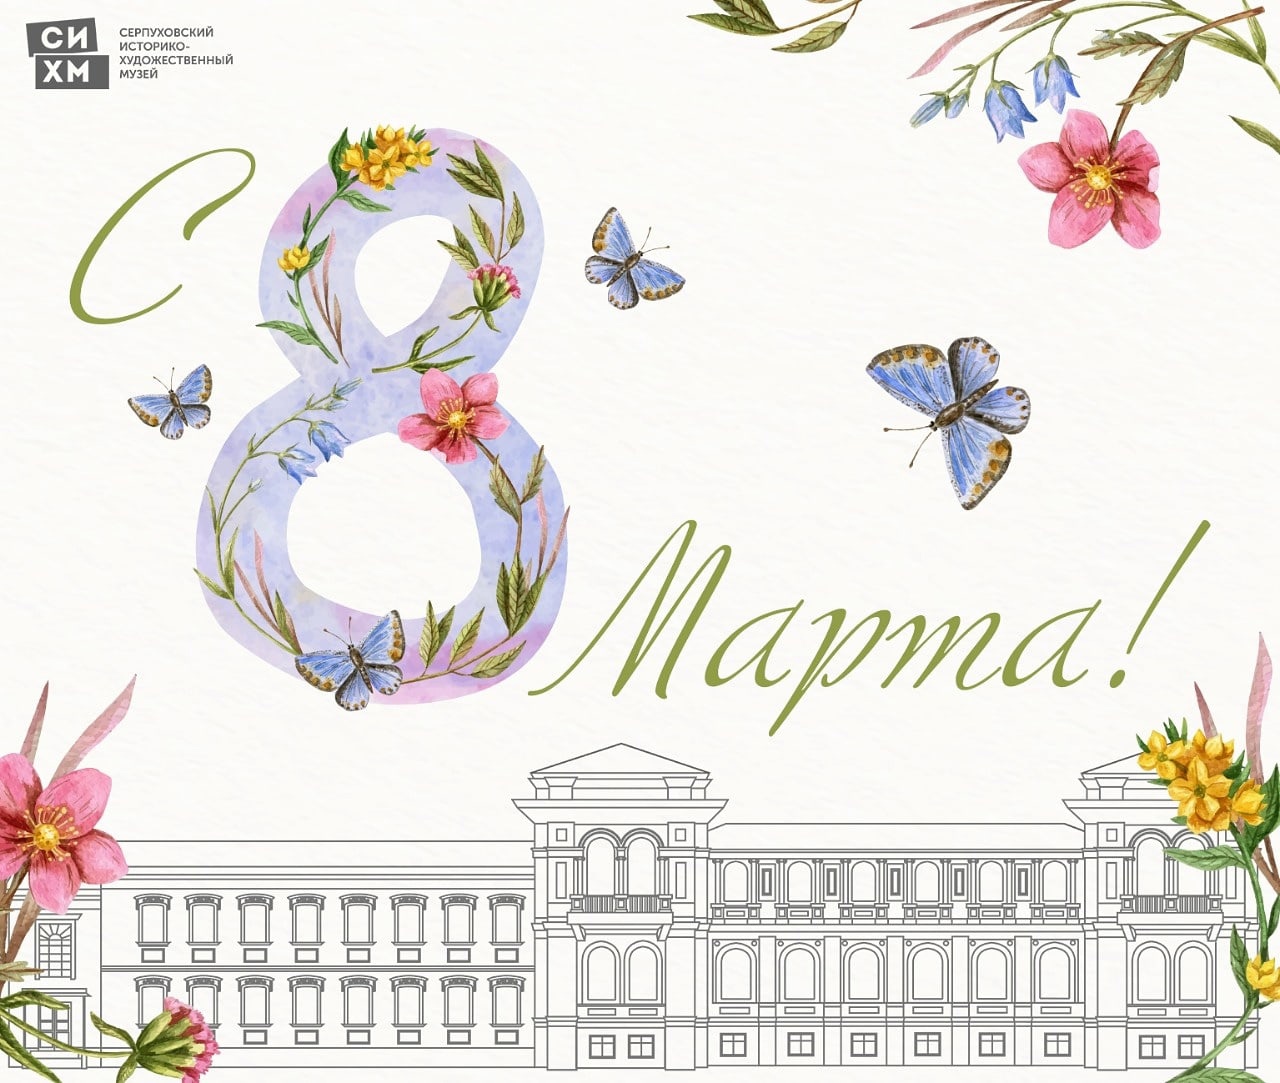 Посещение Серпуховского музея будет бесплатным для женщин 8 марта